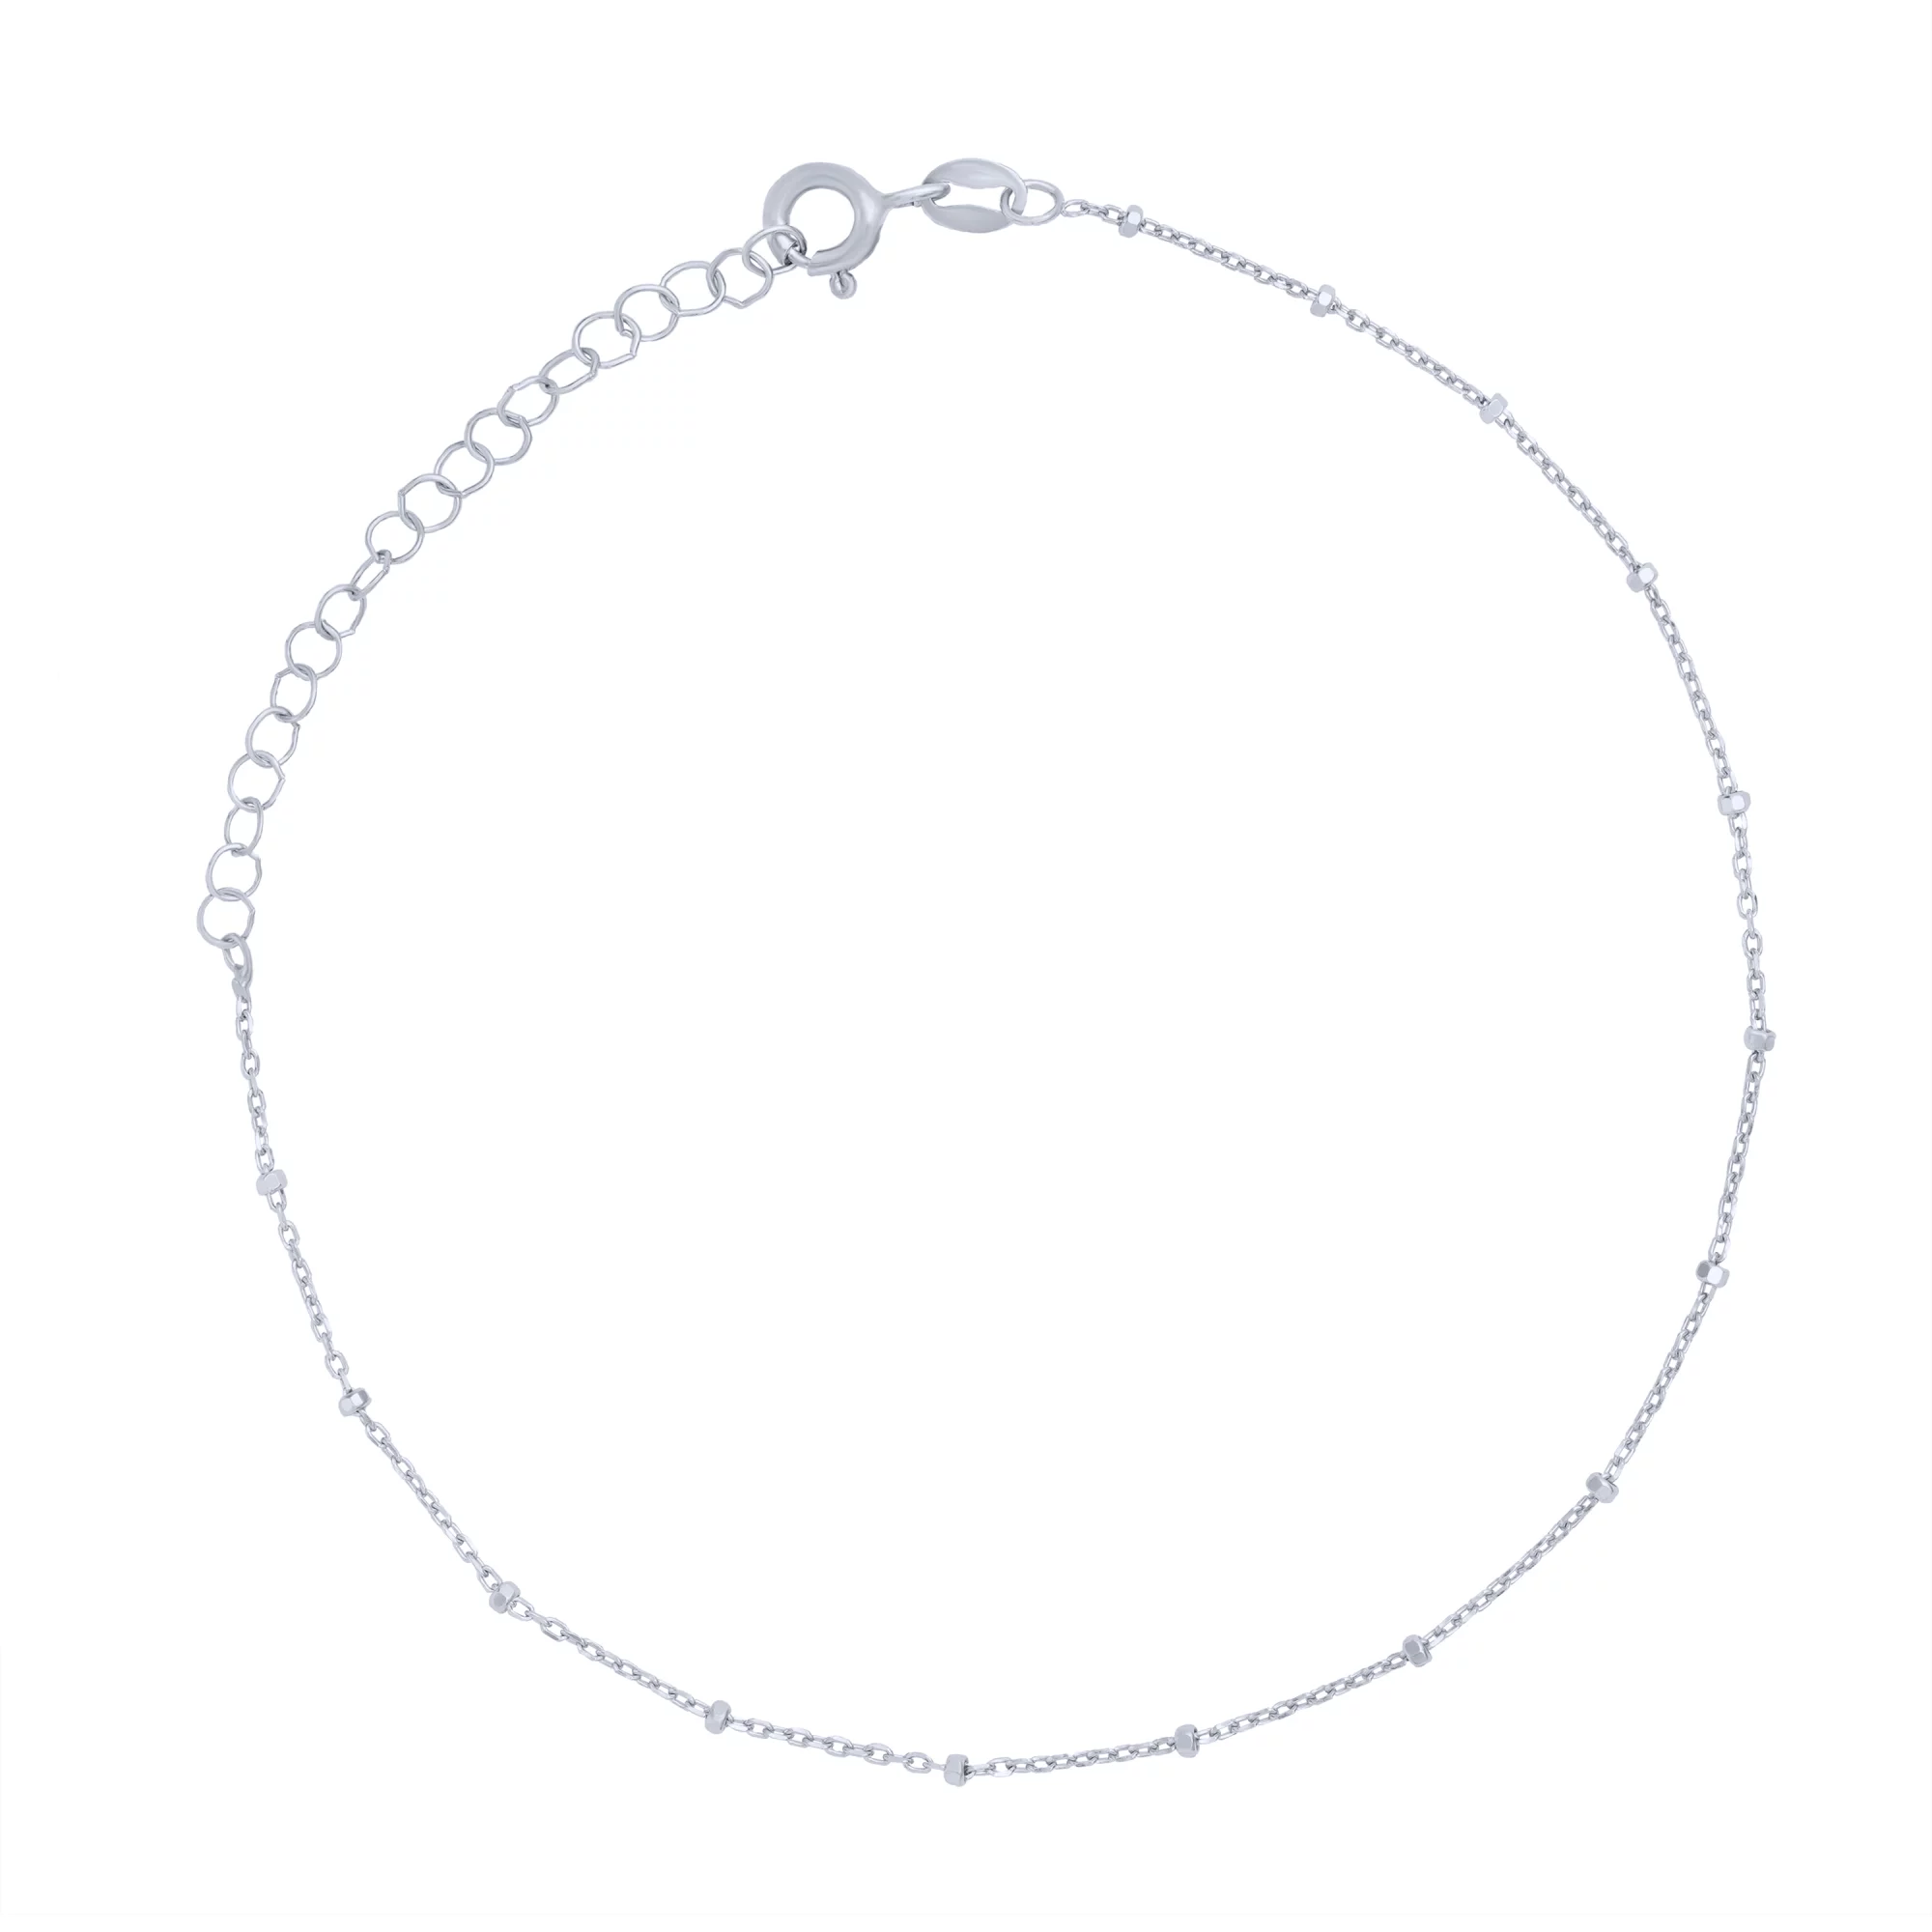 Срібний браслет на ногу якірне плетіння - 1714883 – зображення 1